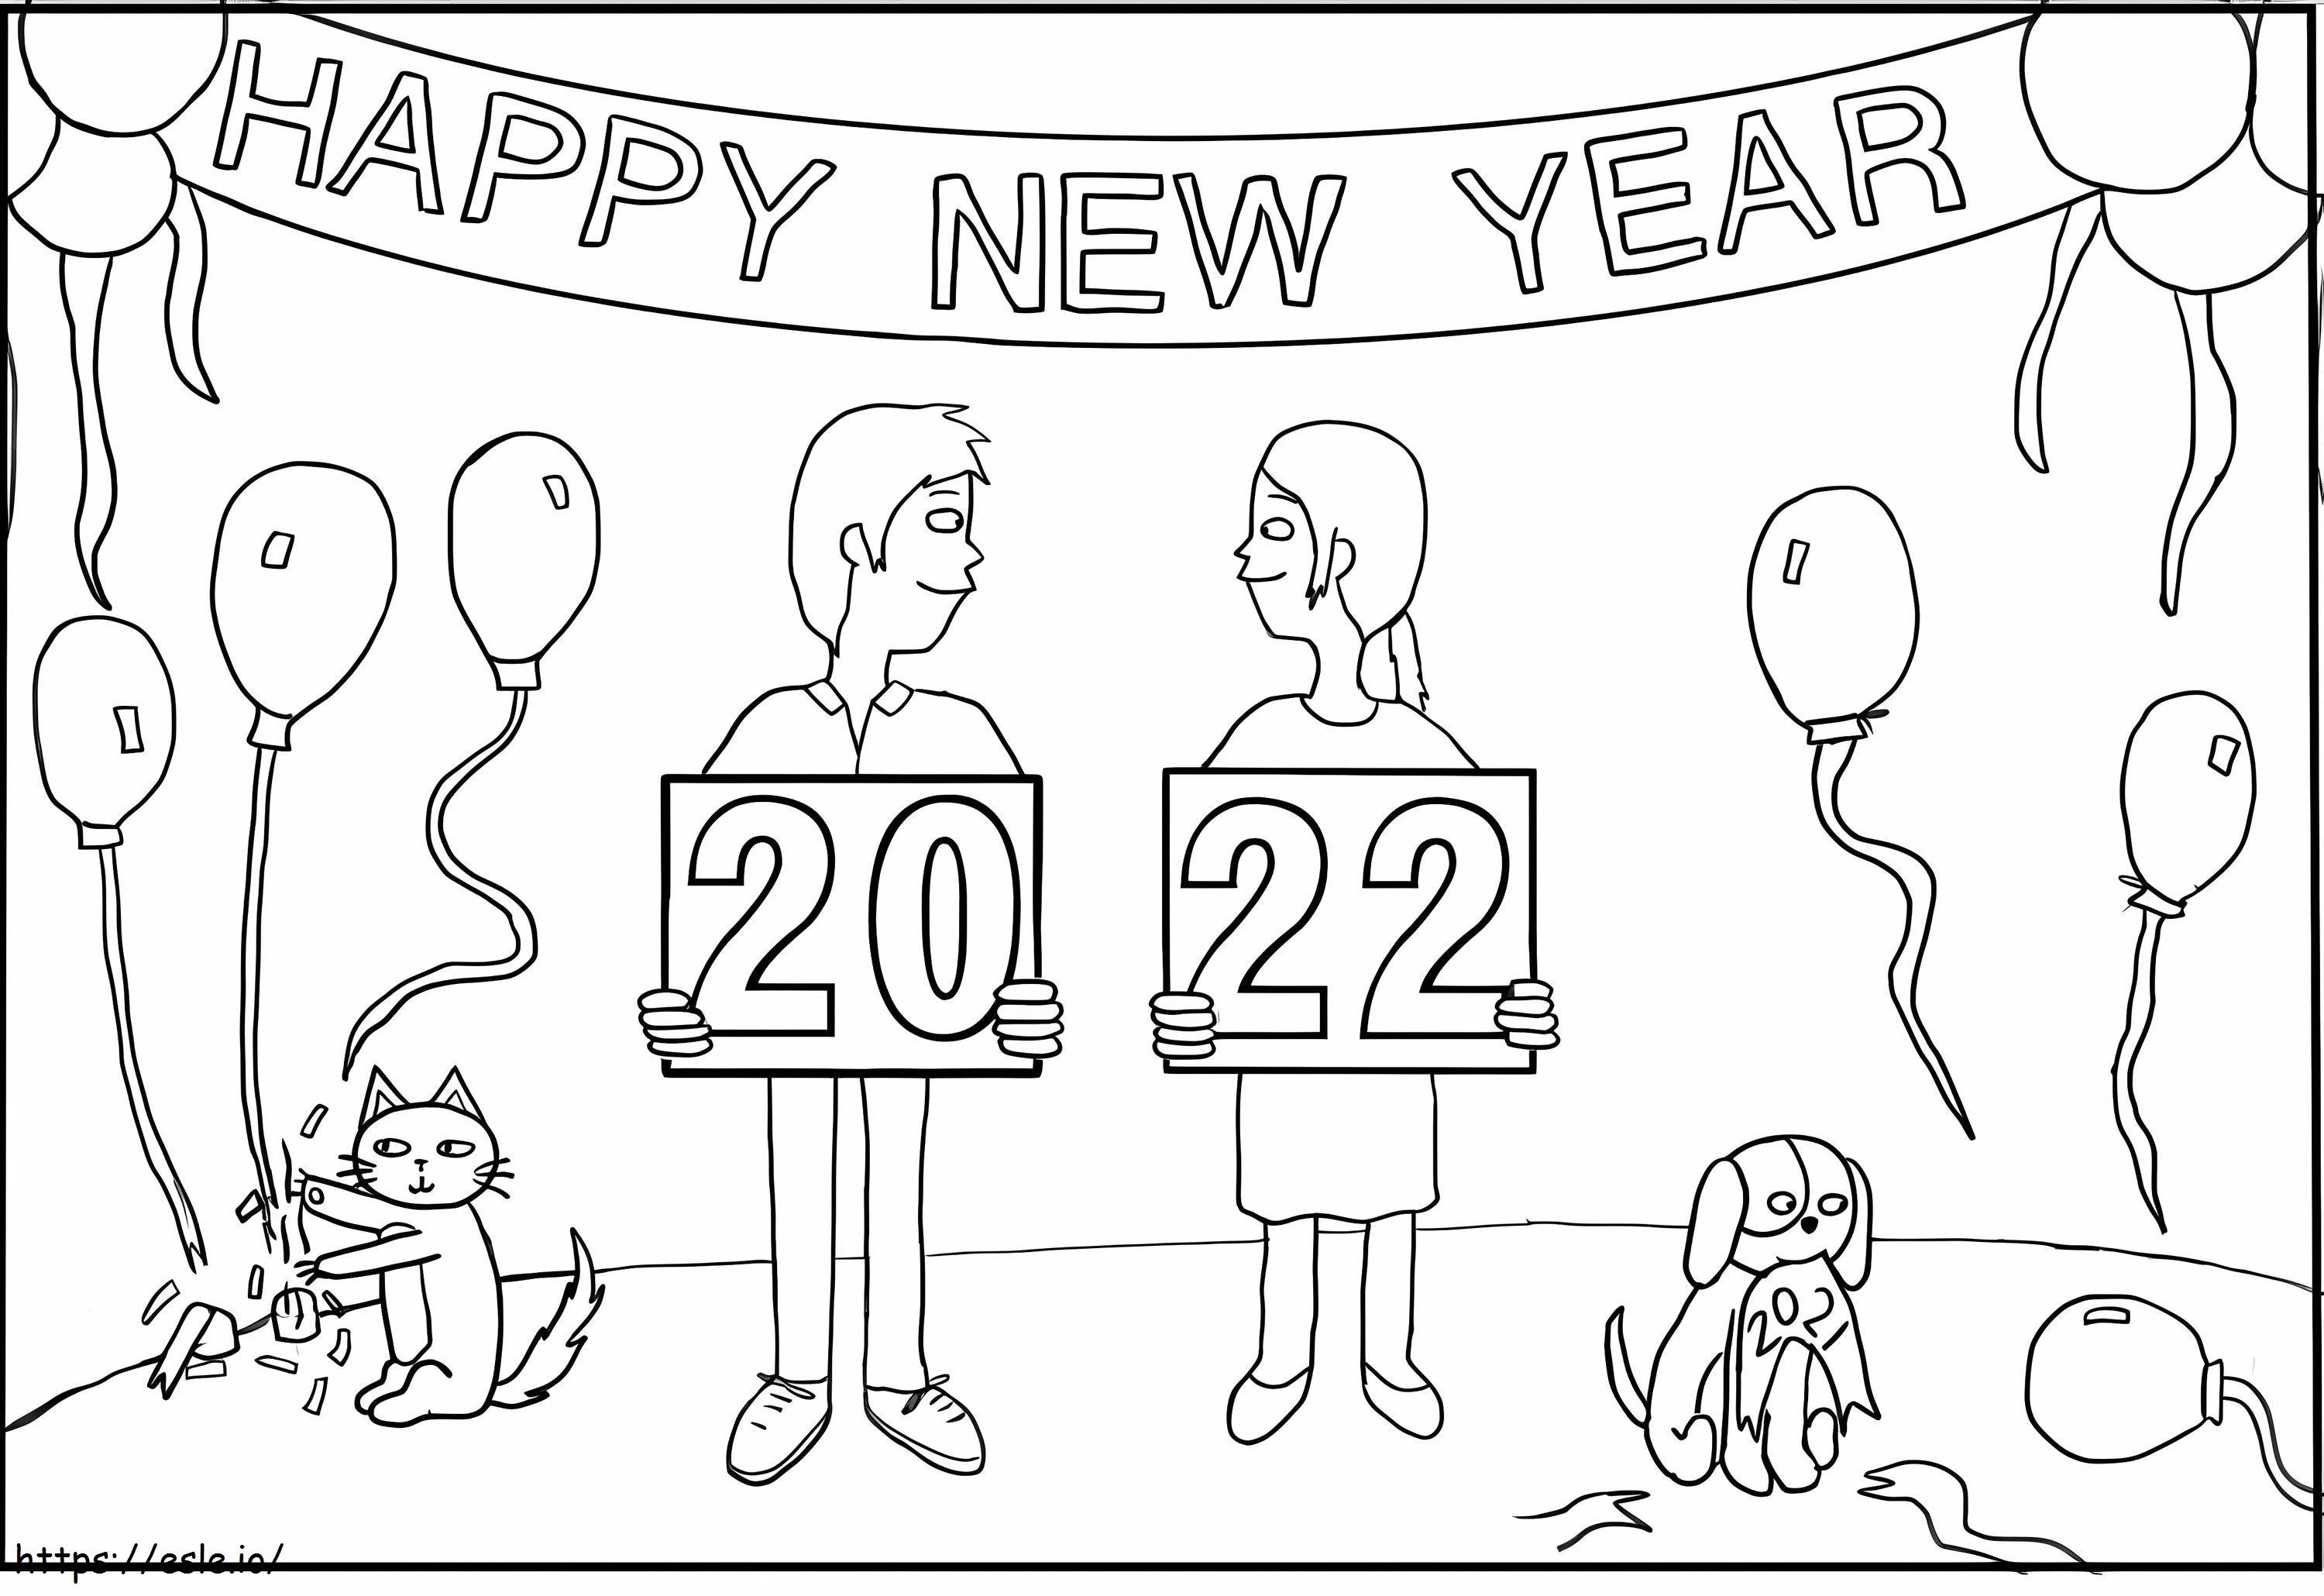 Festa de Ano Novo de 2022 para colorir